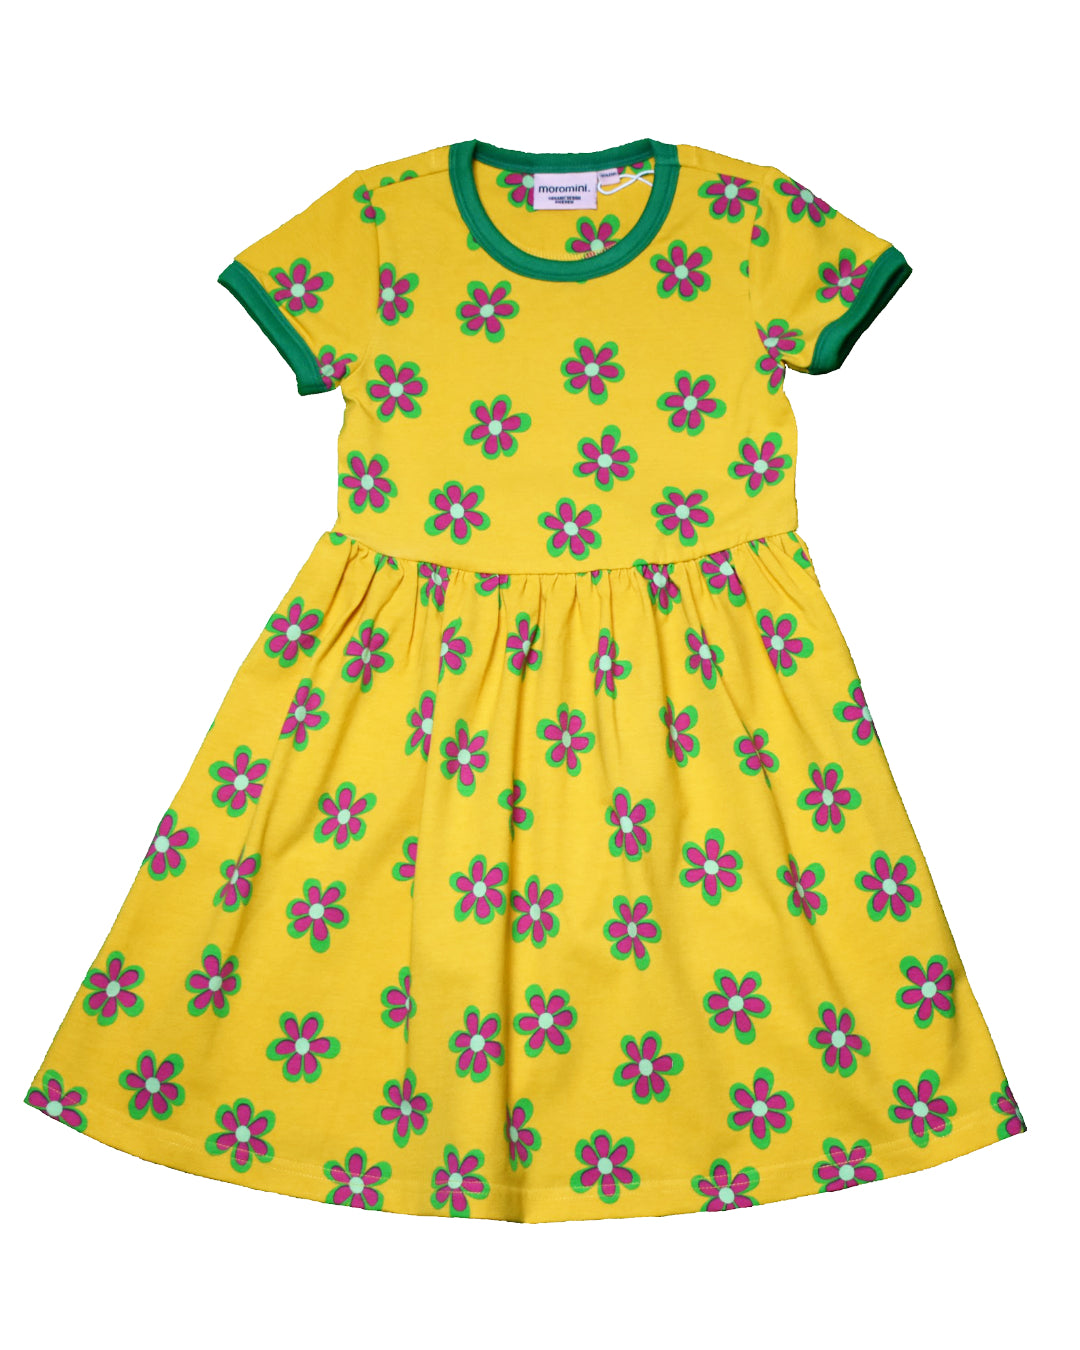 Gelbes kurzarm kleid aus Biobaumwolle - Kinderkleidung von moromini bei Juicy Fashion